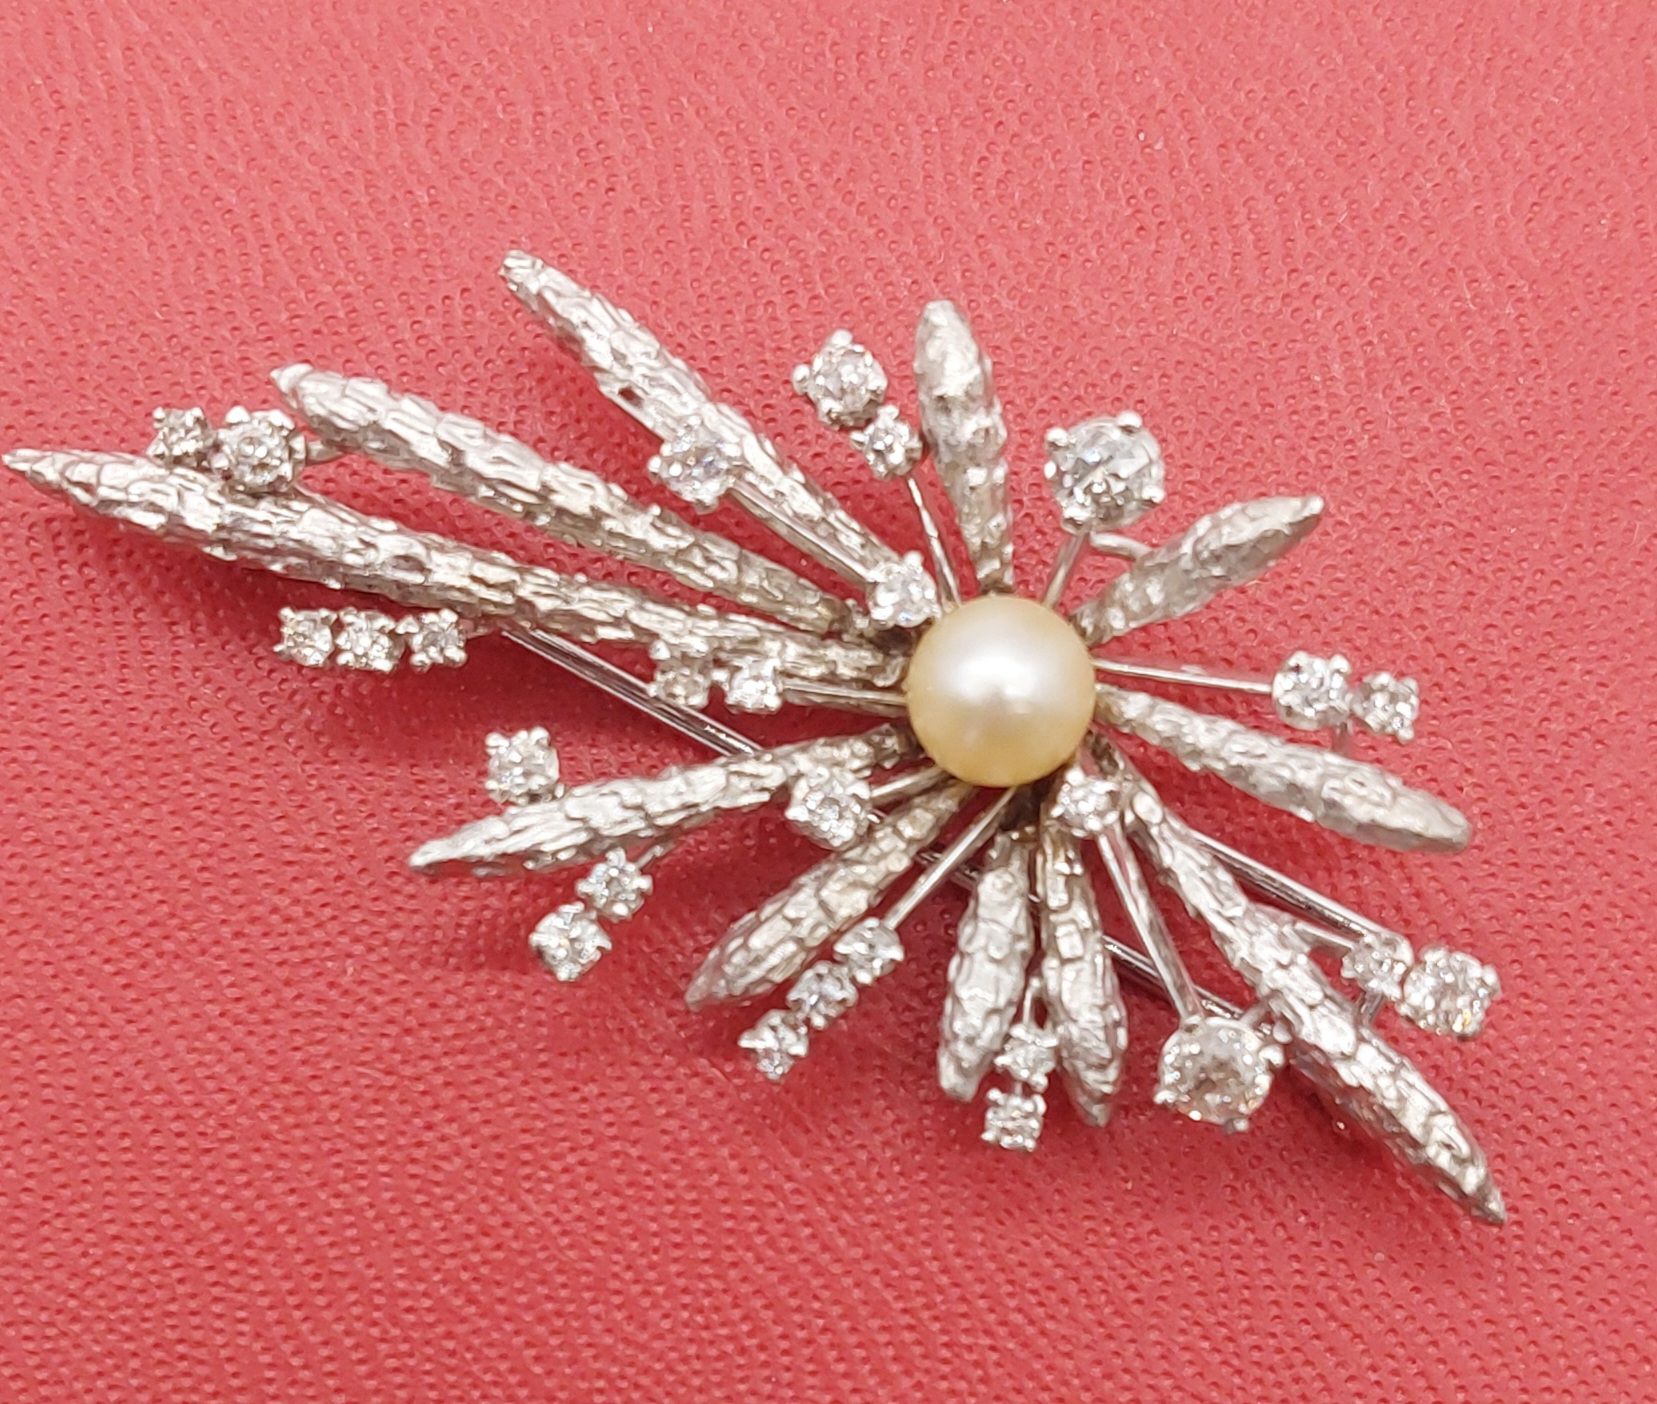 Null Broche de oro blanco y diamantes con una perla

PB : 13,70 g